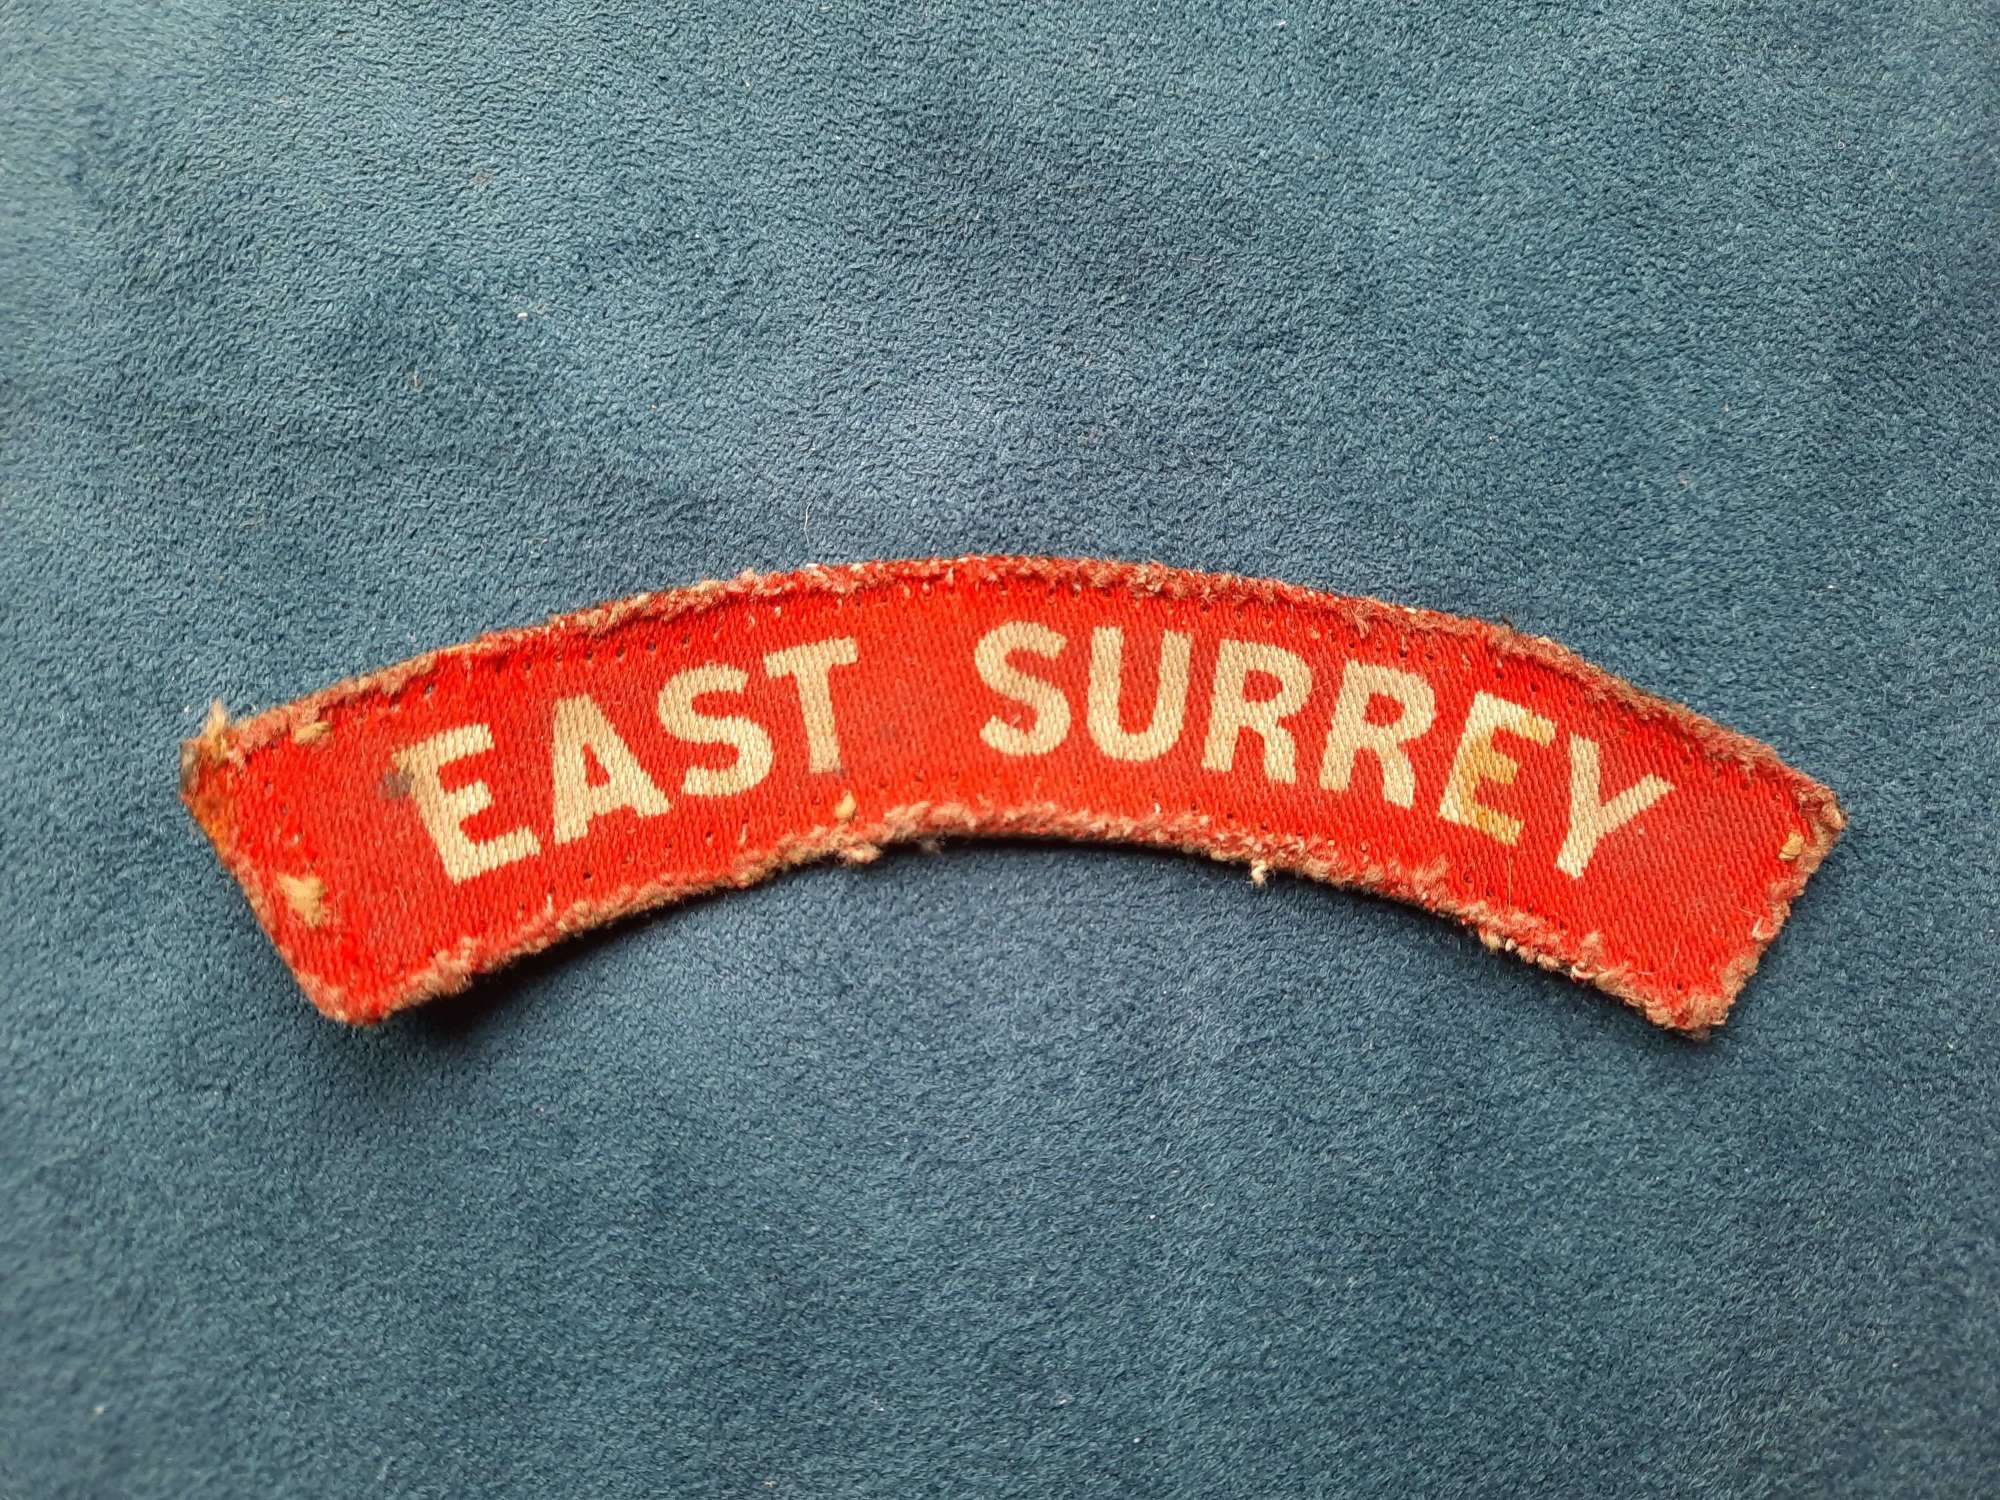 East Surrey Regiment Printed Shoulder Title